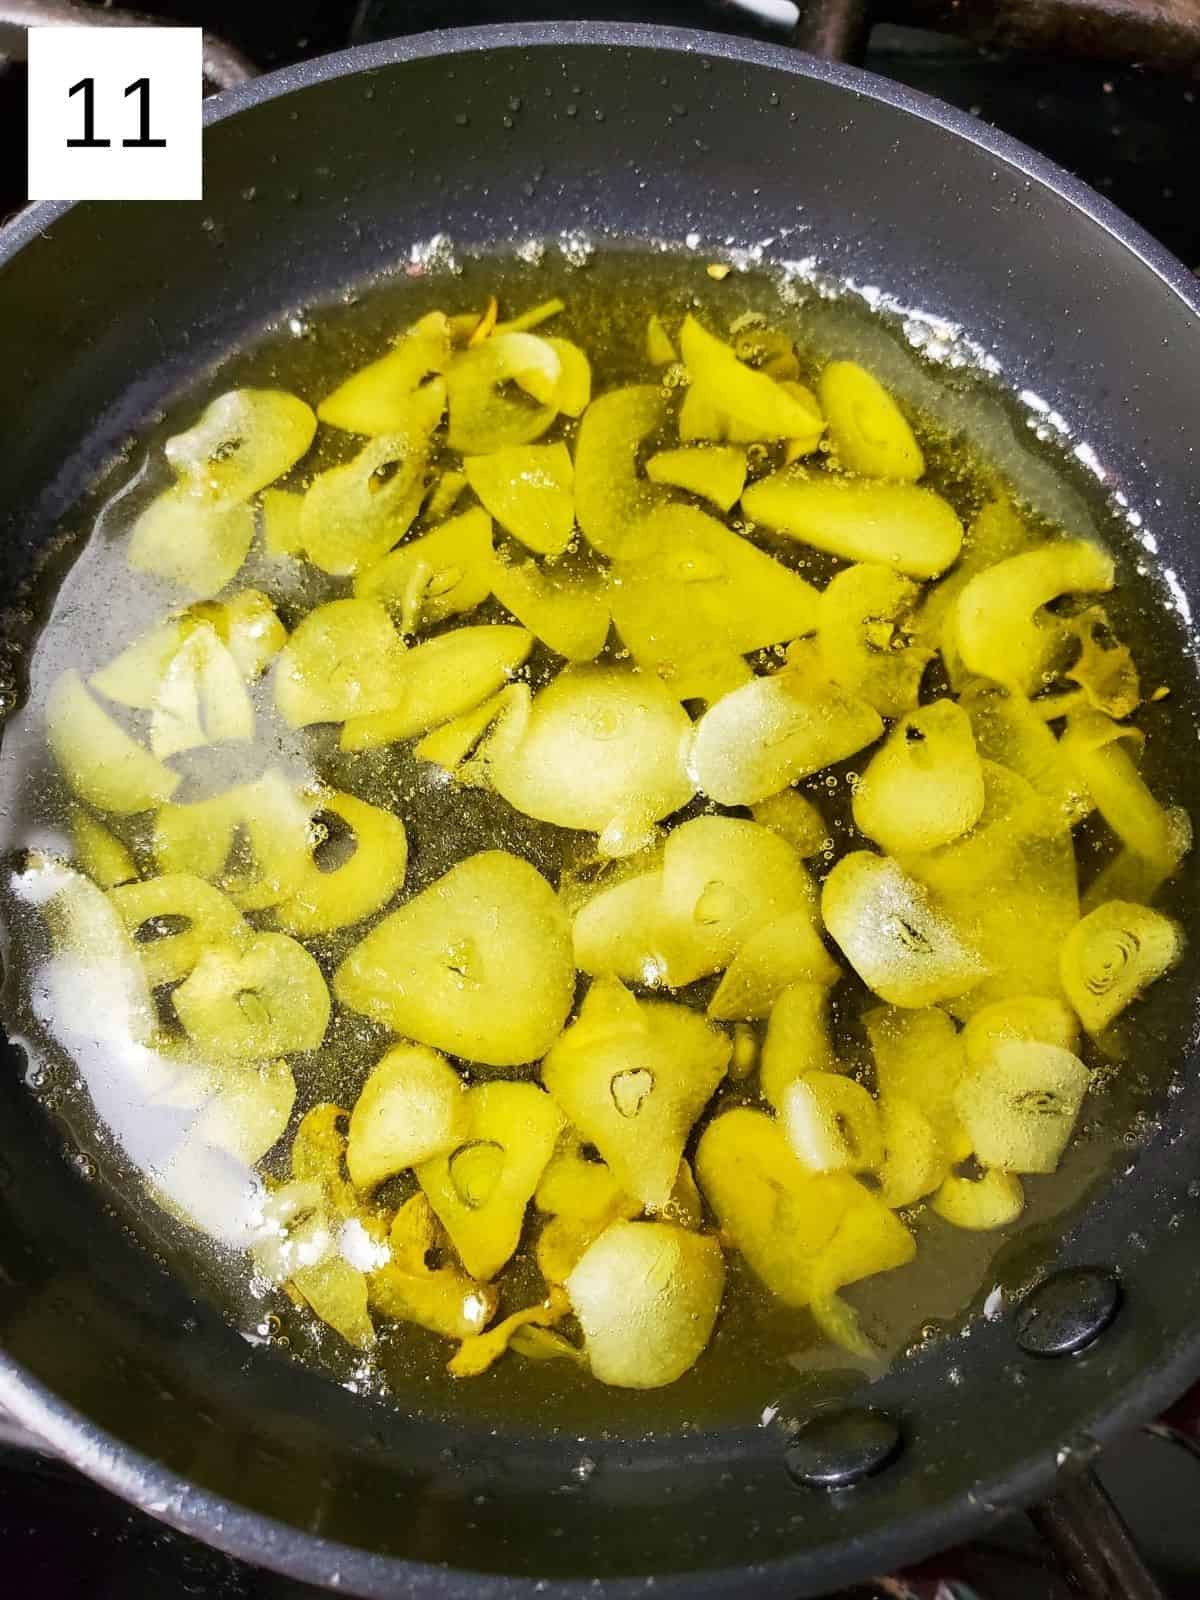 sautéing the garlic slices in a pot using avocado oil.